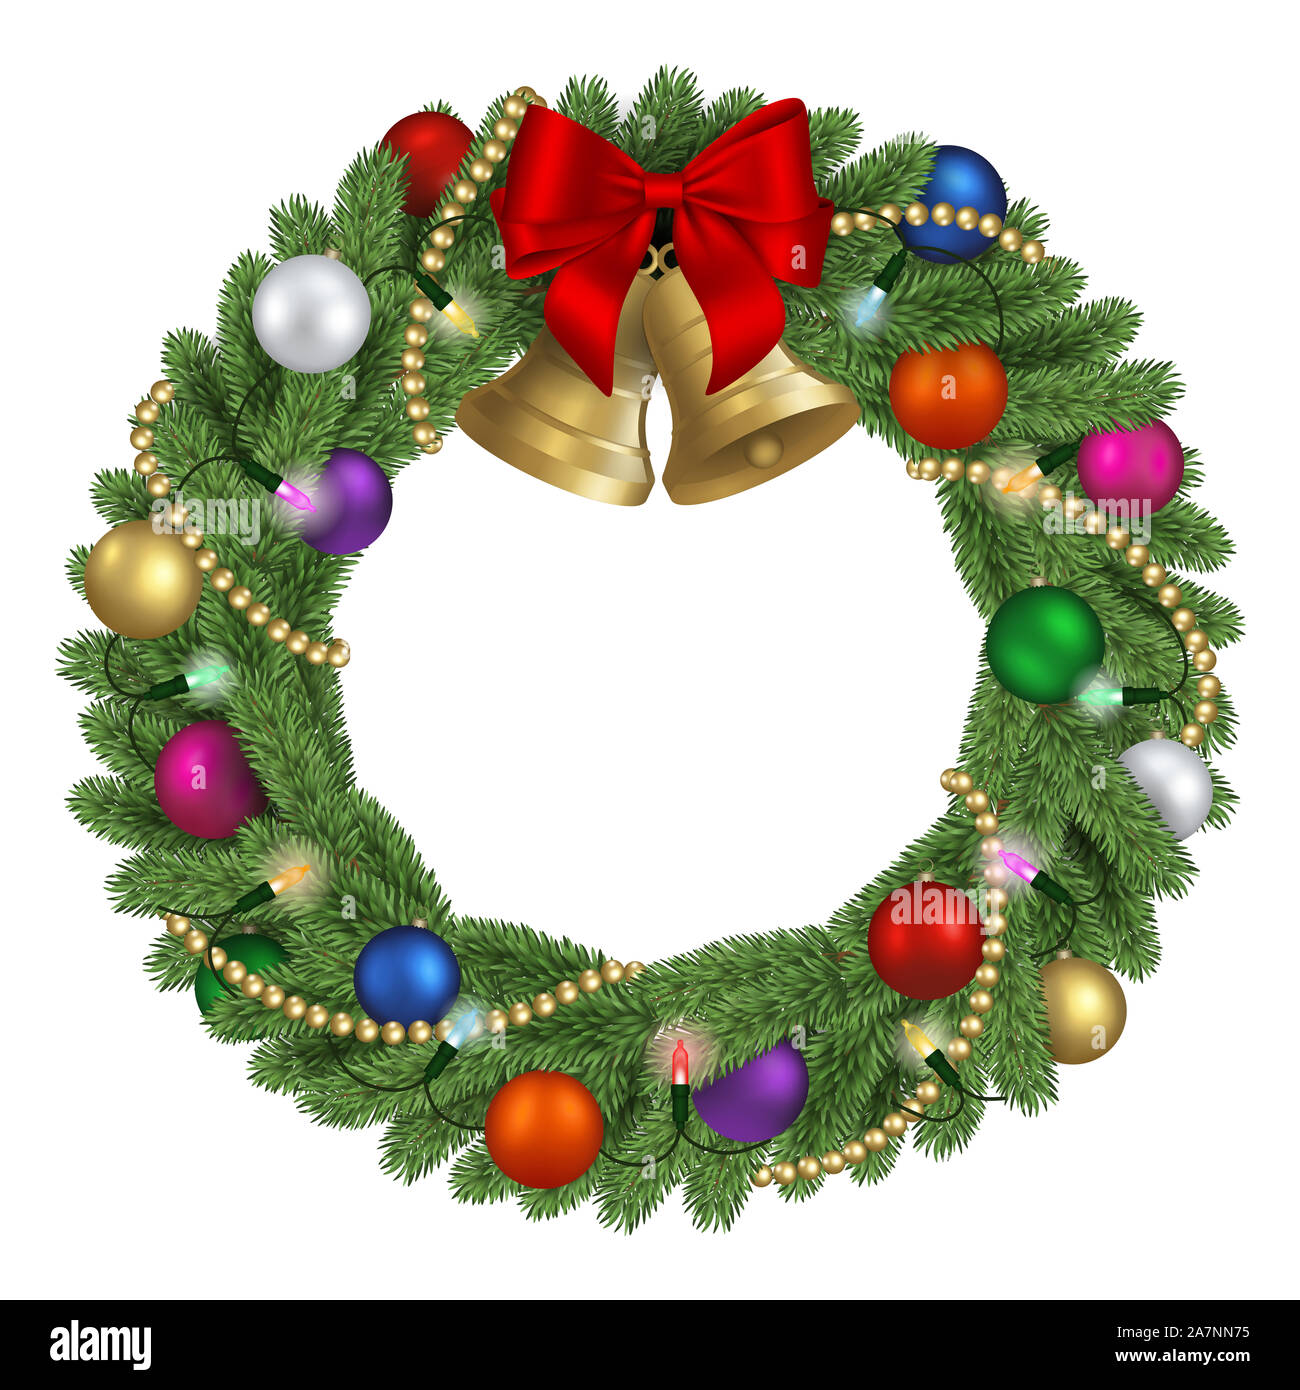 Weihnachten kiefer Kranz mit bunten Kugeln, bunte Lichter, gold perlen,  roten Bogen und goldene Glöckchen Stockfotografie - Alamy